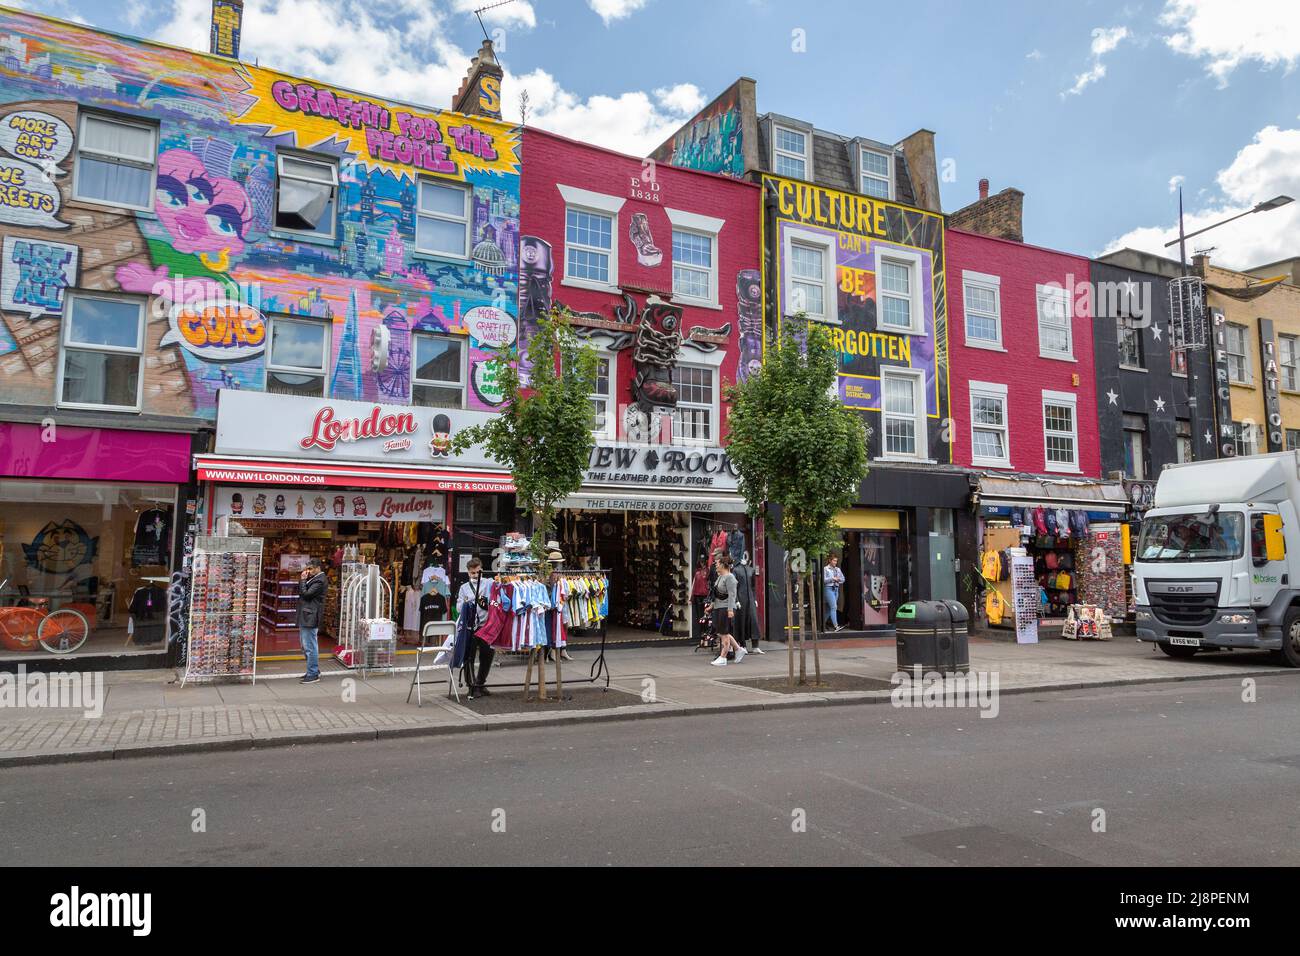 Entlang der Camden High Street verteilt sich eine Reihe von farbenfrohen Geschäften. In dieser trendigen Gegend leben viele unabhängige kleine Unternehmen und Einzelhändler. Stockfoto